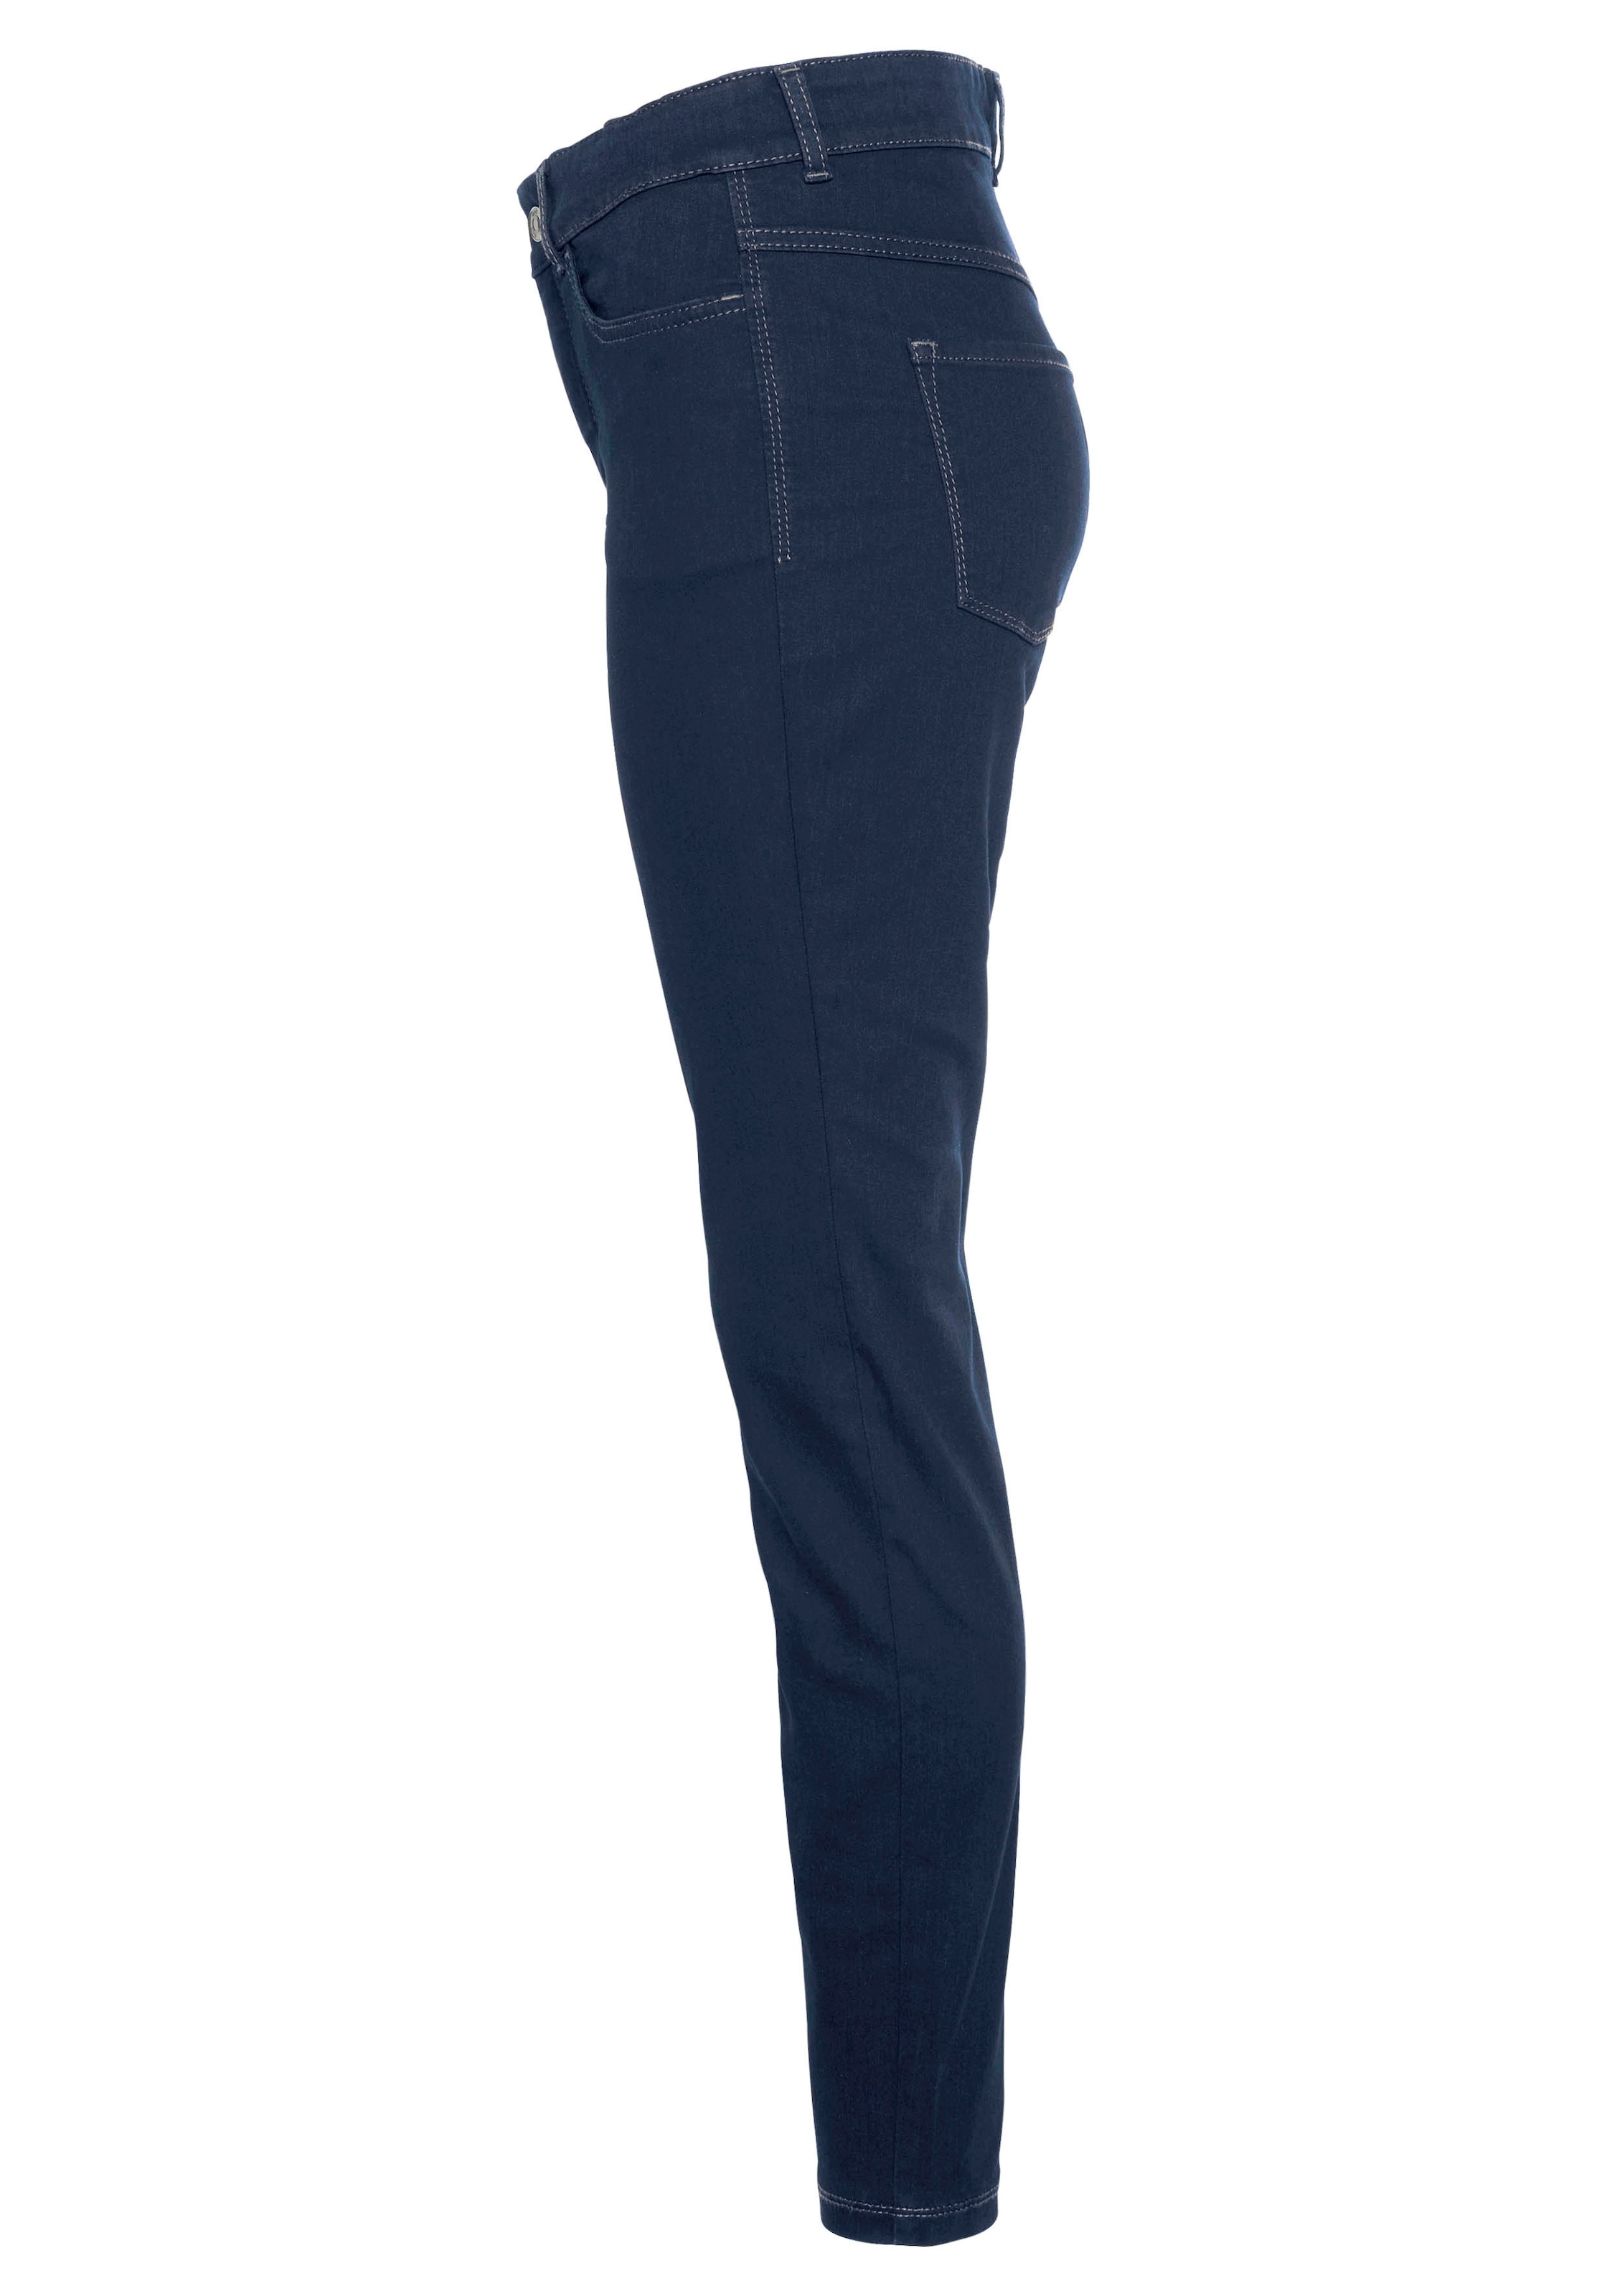 bei sitzt »Hiperstretch-Skinny«, Qualität ganzen Tag den MAC OTTOversand Power-Stretch Skinny-fit-Jeans bequem